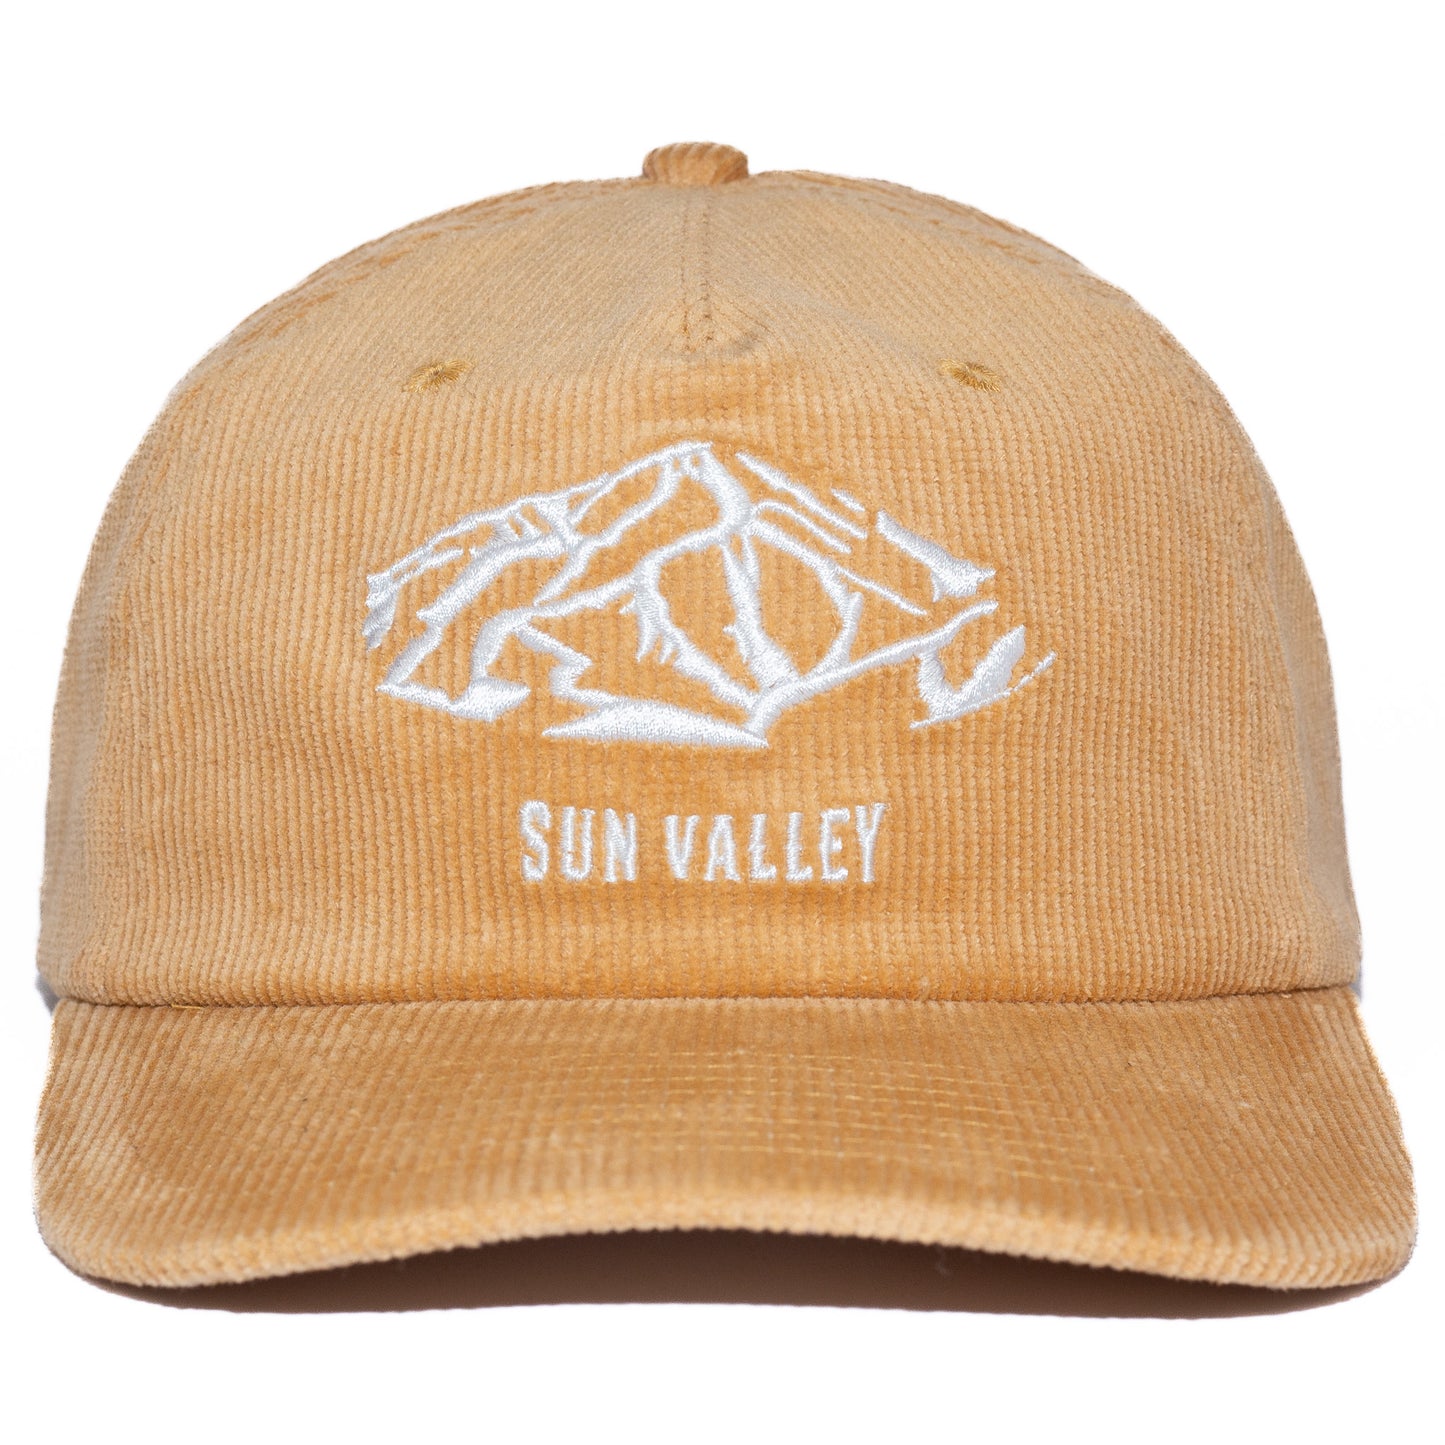 Sun Valley Cap - Camel